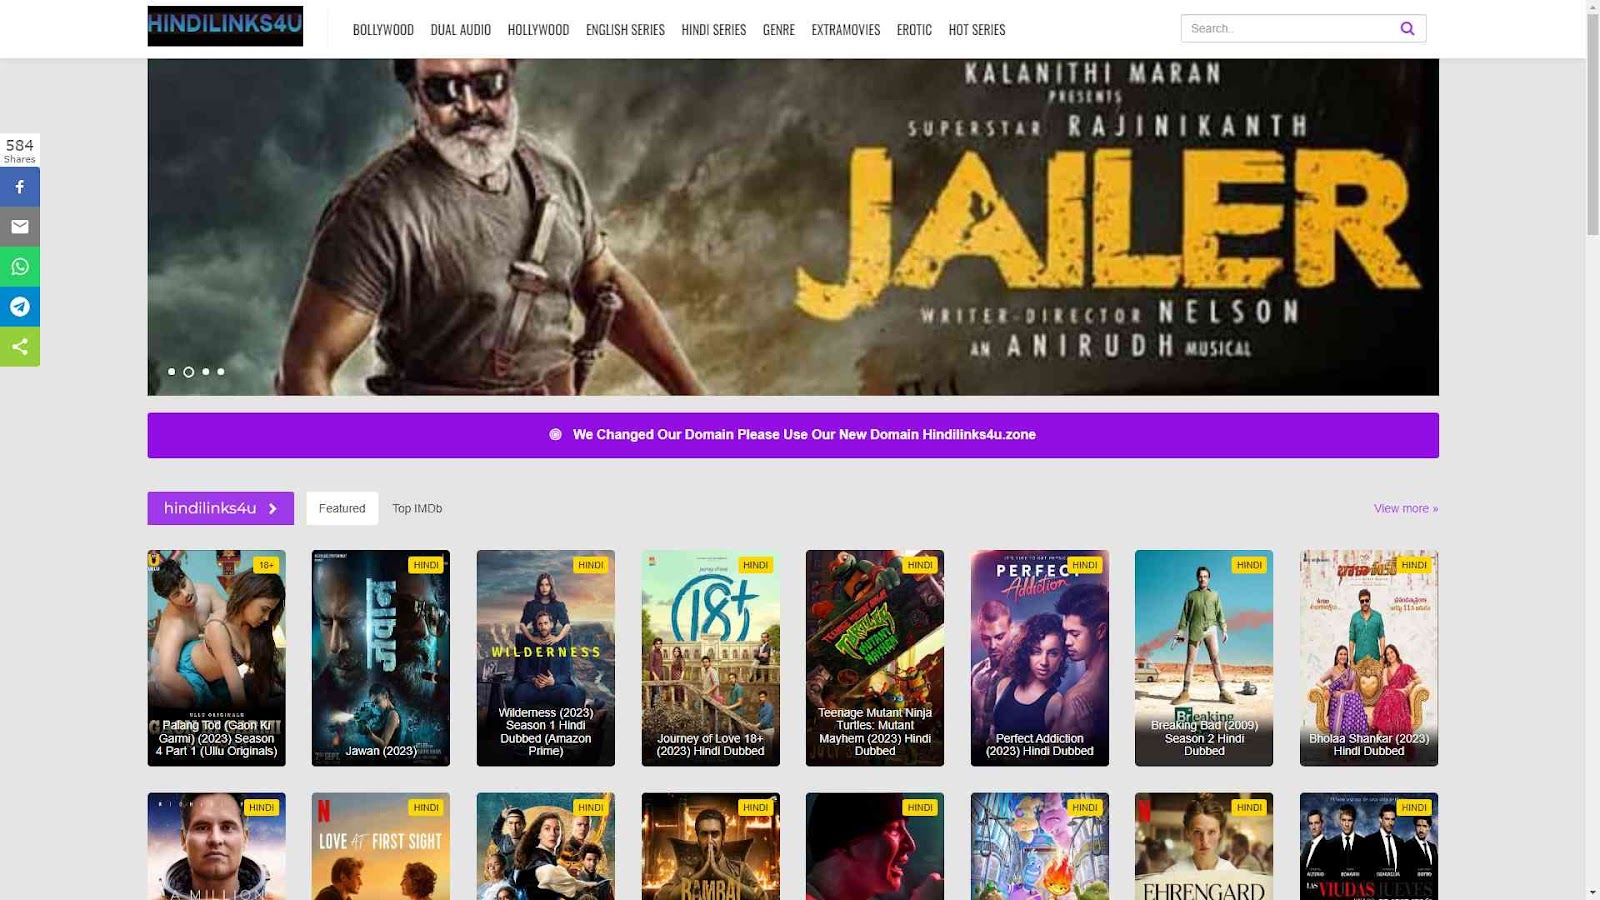  Hindilinks4u: Multilingual Movie Hub